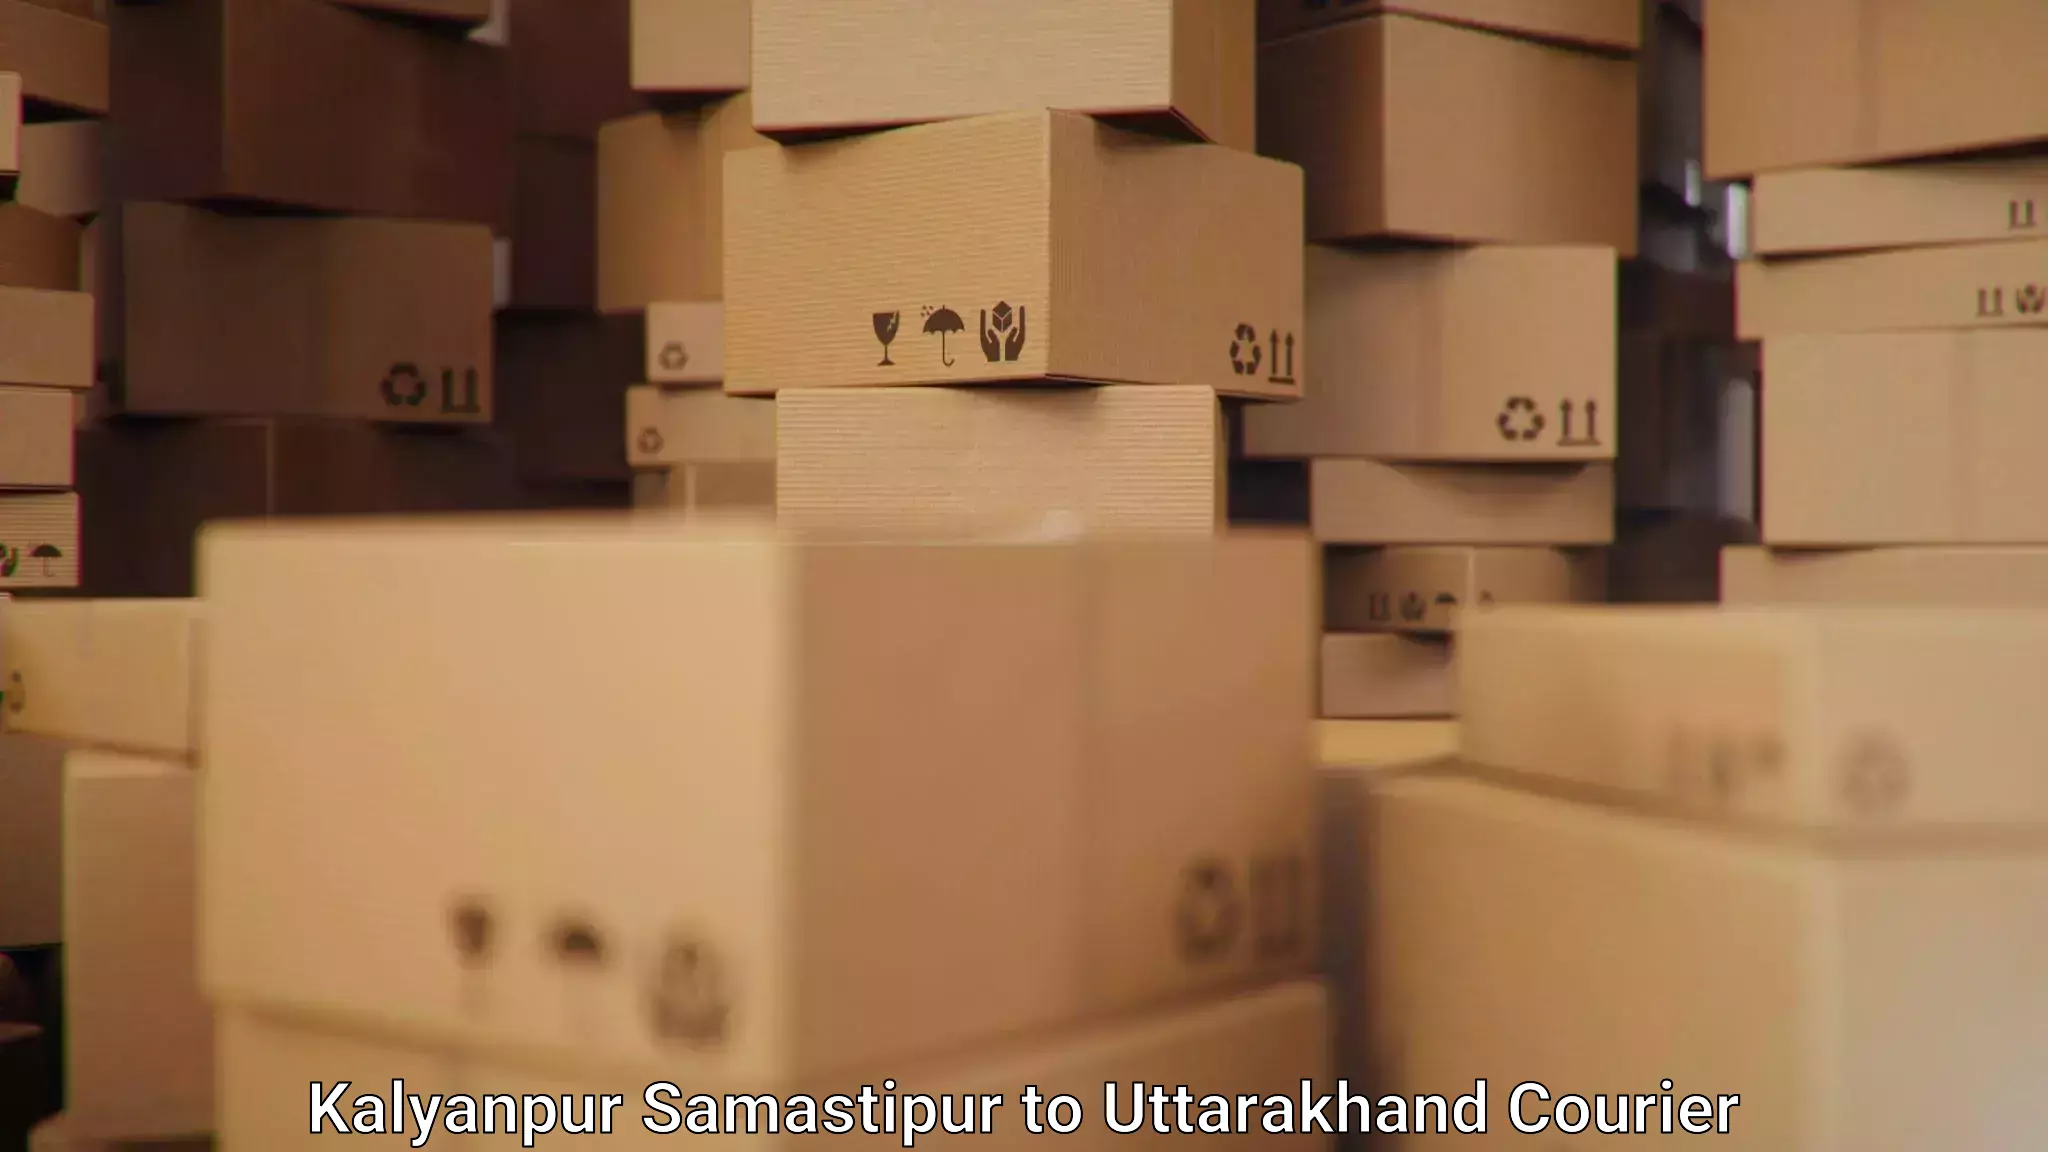 Modern courier technology Kalyanpur Samastipur to Baijnath Bageshwar